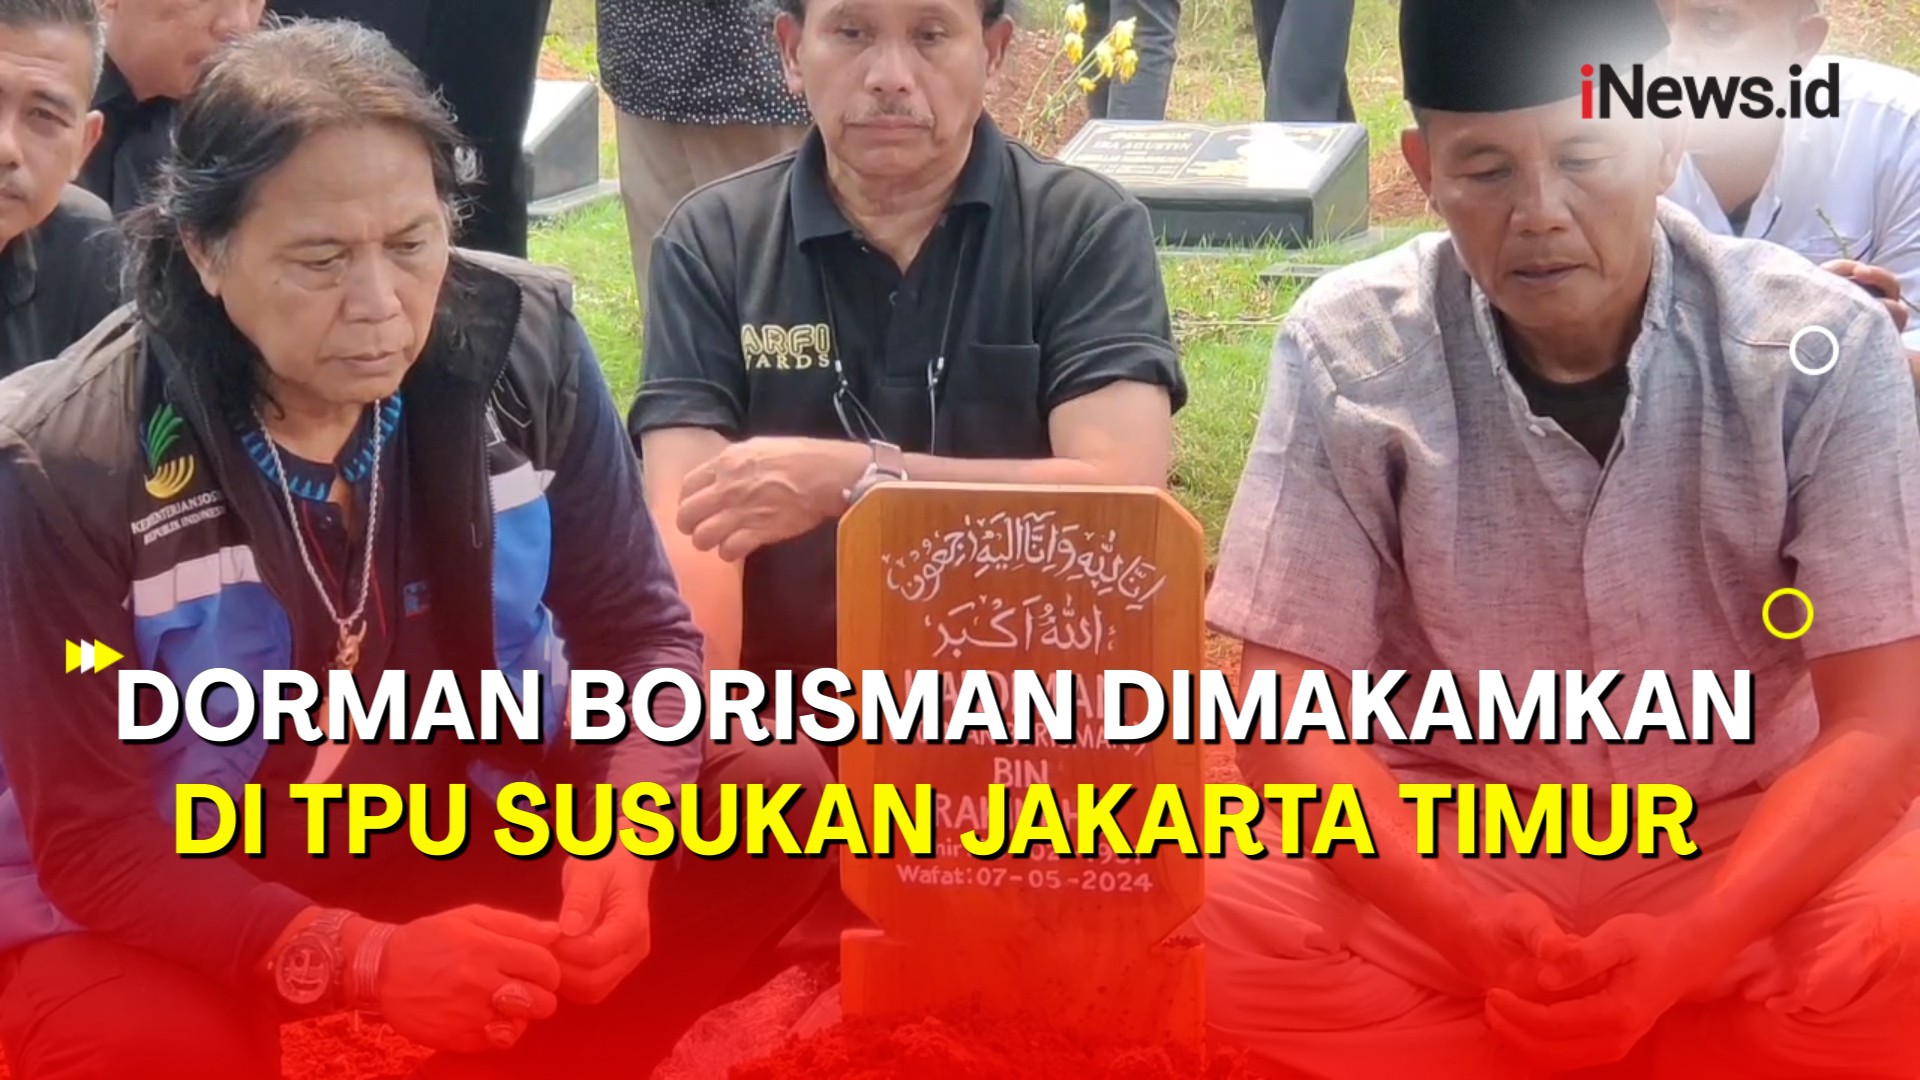 Aktor Senior Dorman Borisman Dimakamkan Bersama Kaki Amputasinya di TPU Susukan Jakarta Timur 